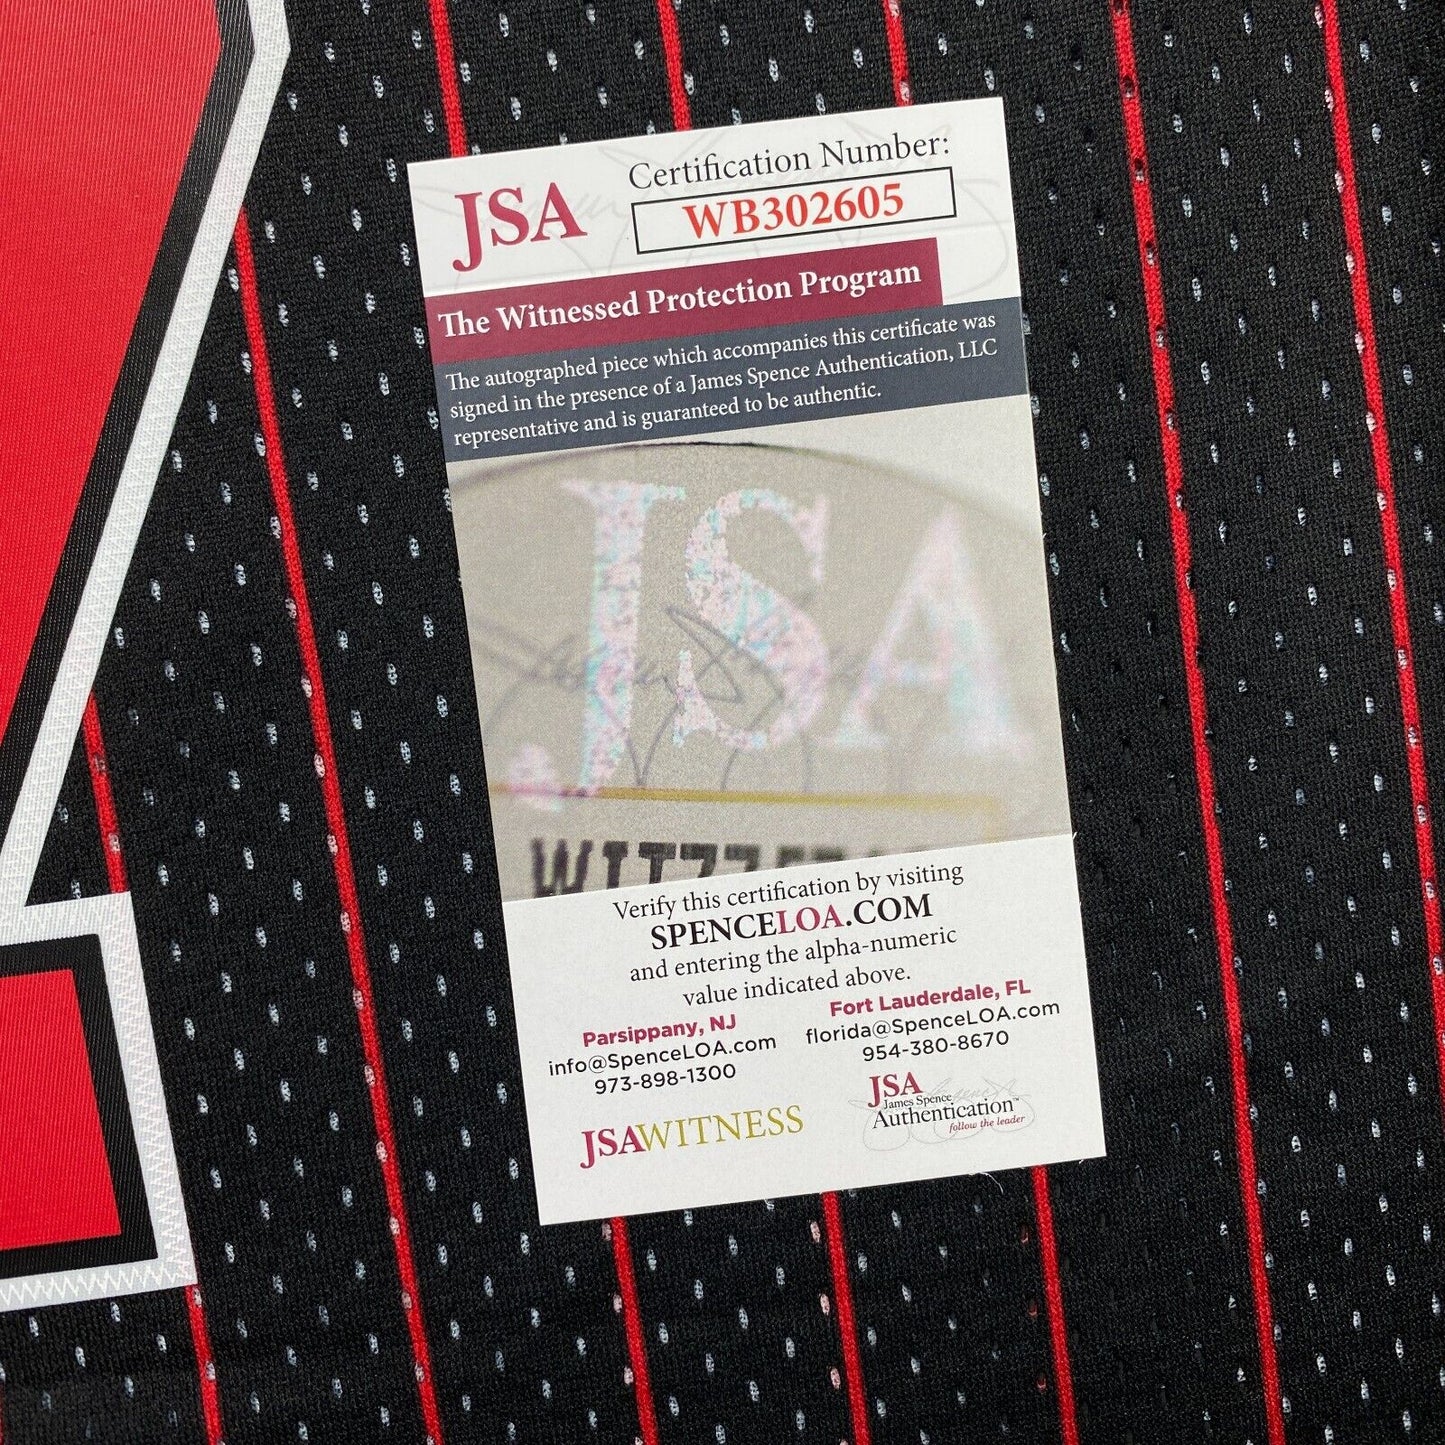 100% Authentic Toni Kukoc Mitchell Ness Chicago Bulls Signed Jersey COA JSA 2XL